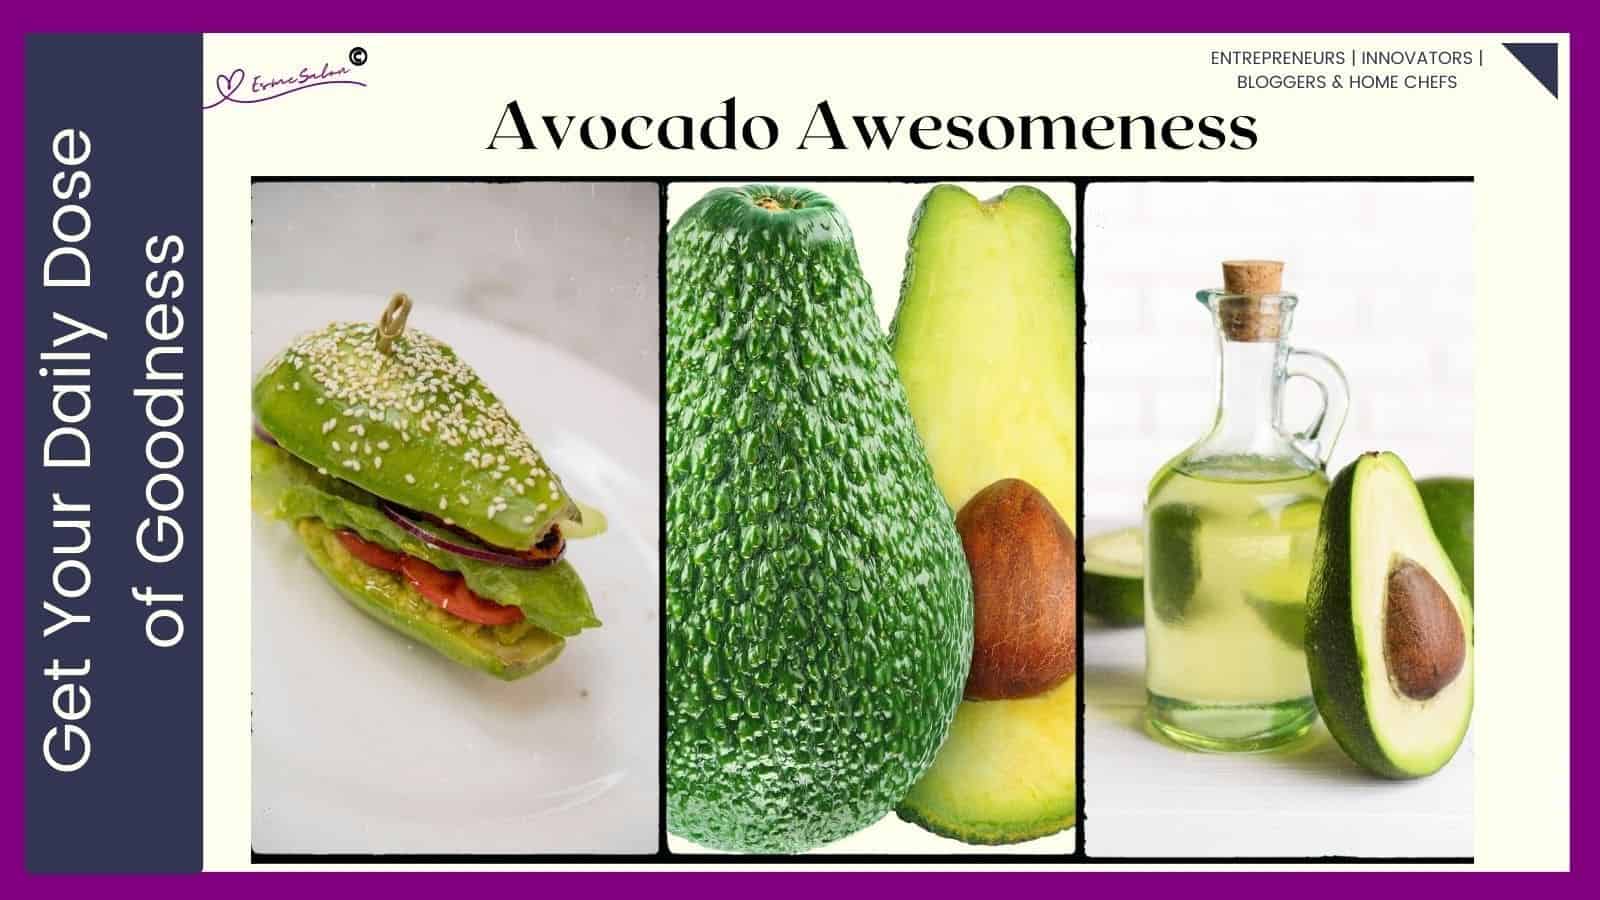 images of avocado toast, fresh avocado and avocado oil